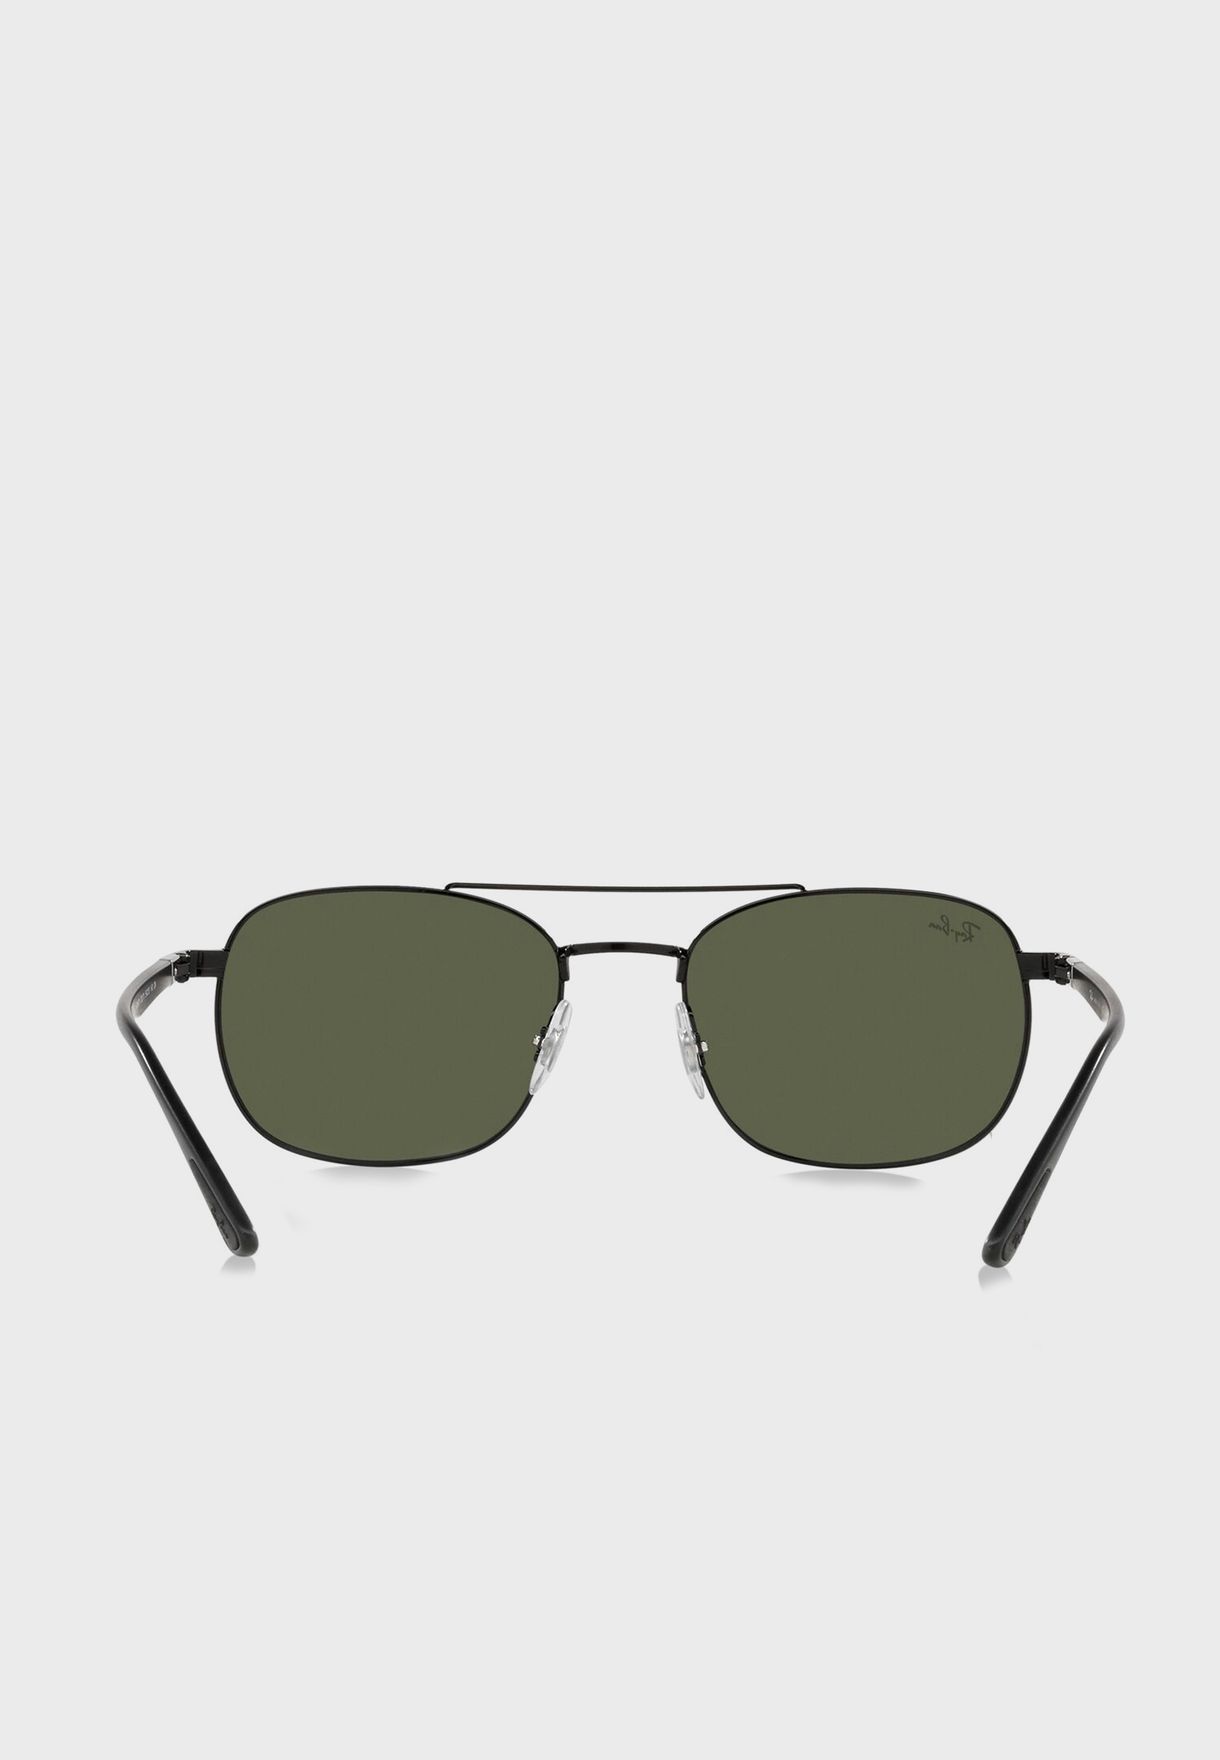 0Rb3670 Sunglasses